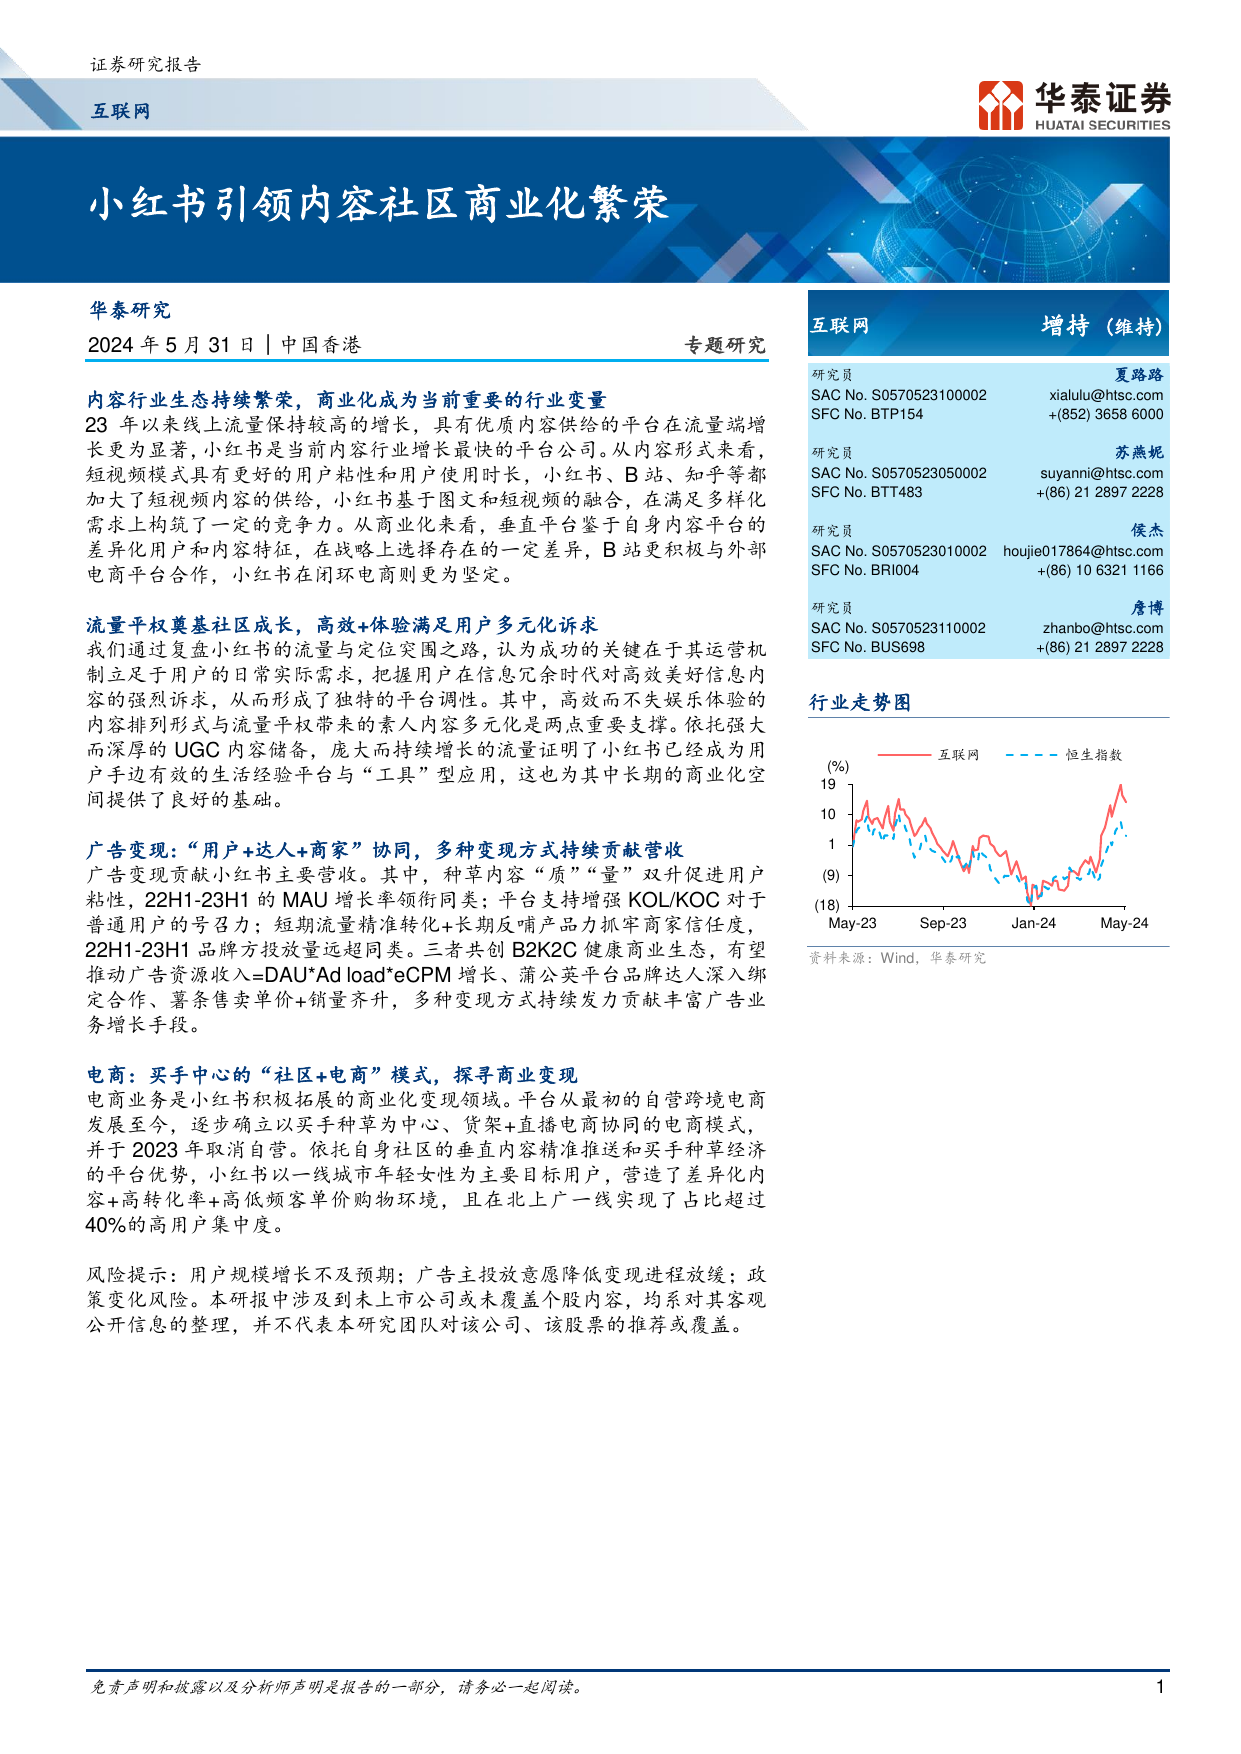 小红书引领内容社区商业化繁荣-华泰证券2202405.pdf